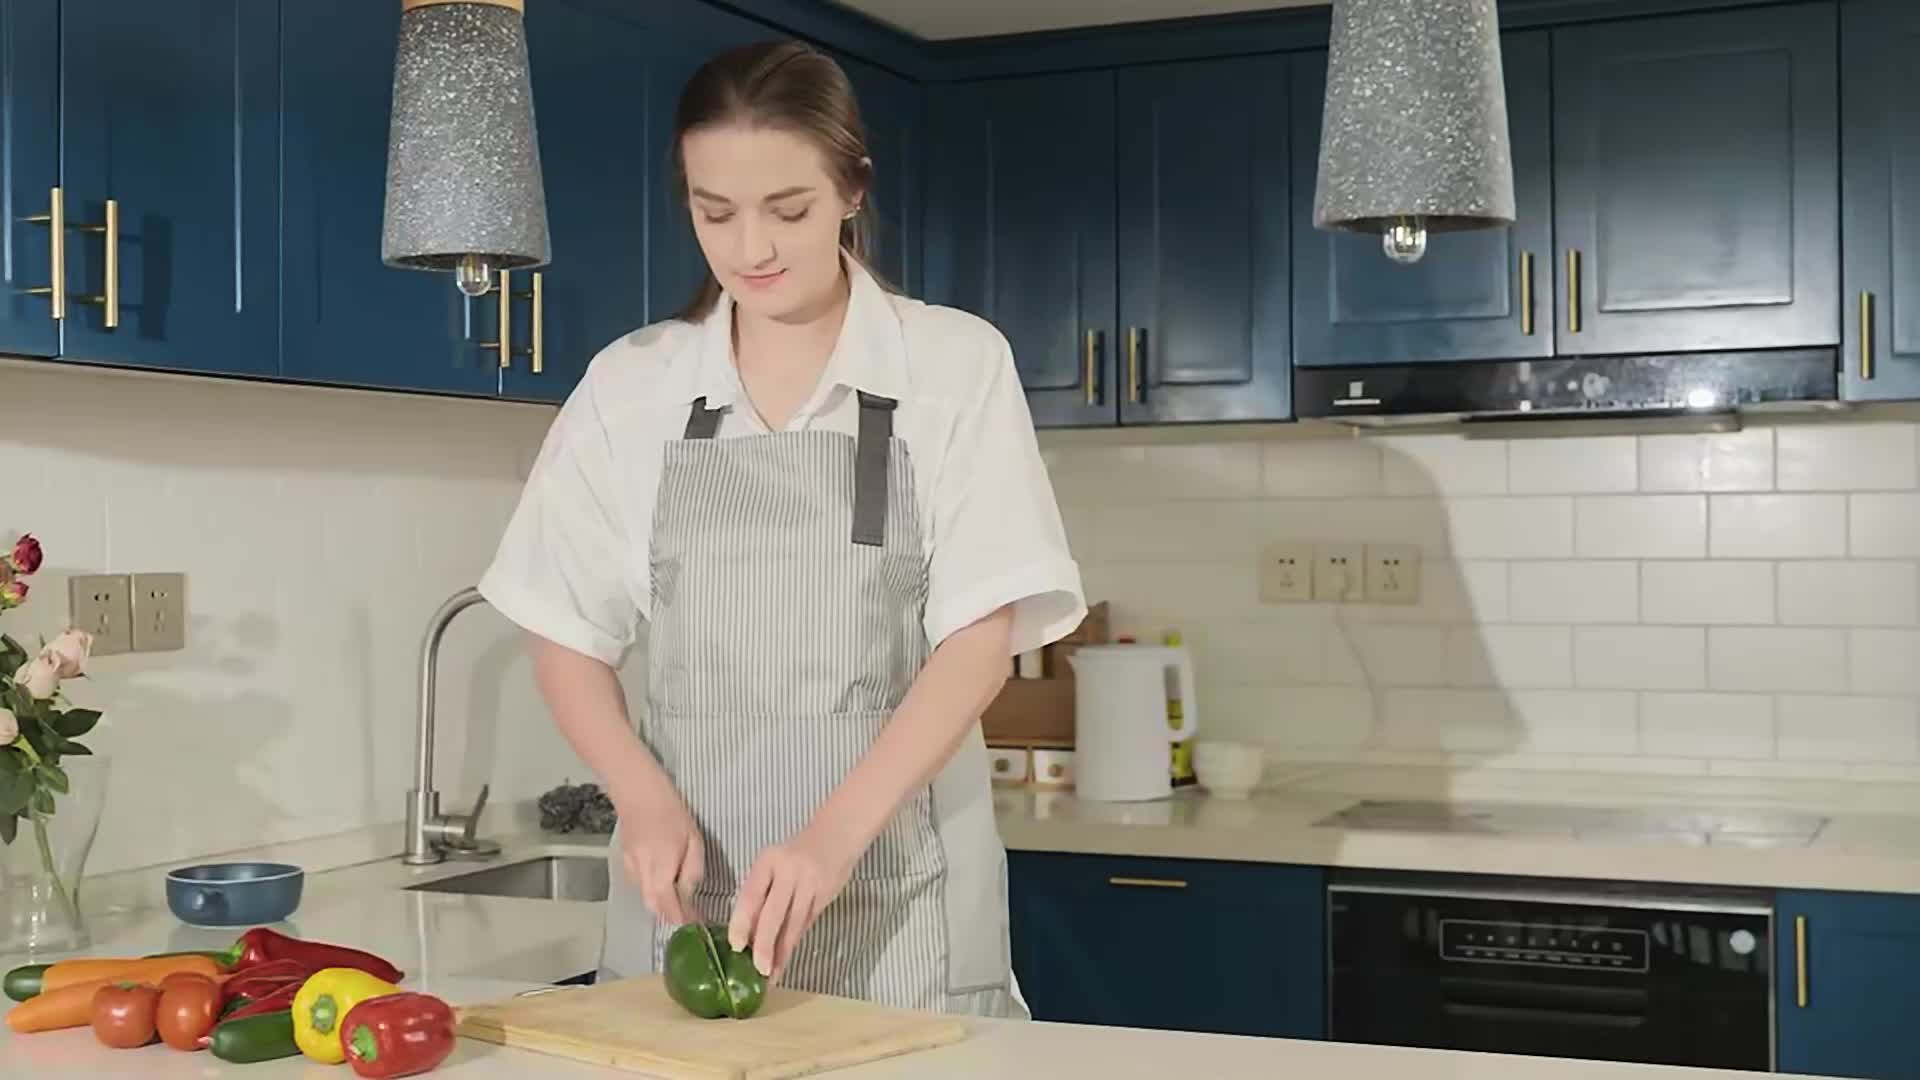 Les Petits Chefs - Kit de Cuisine Montessori – Cadouet